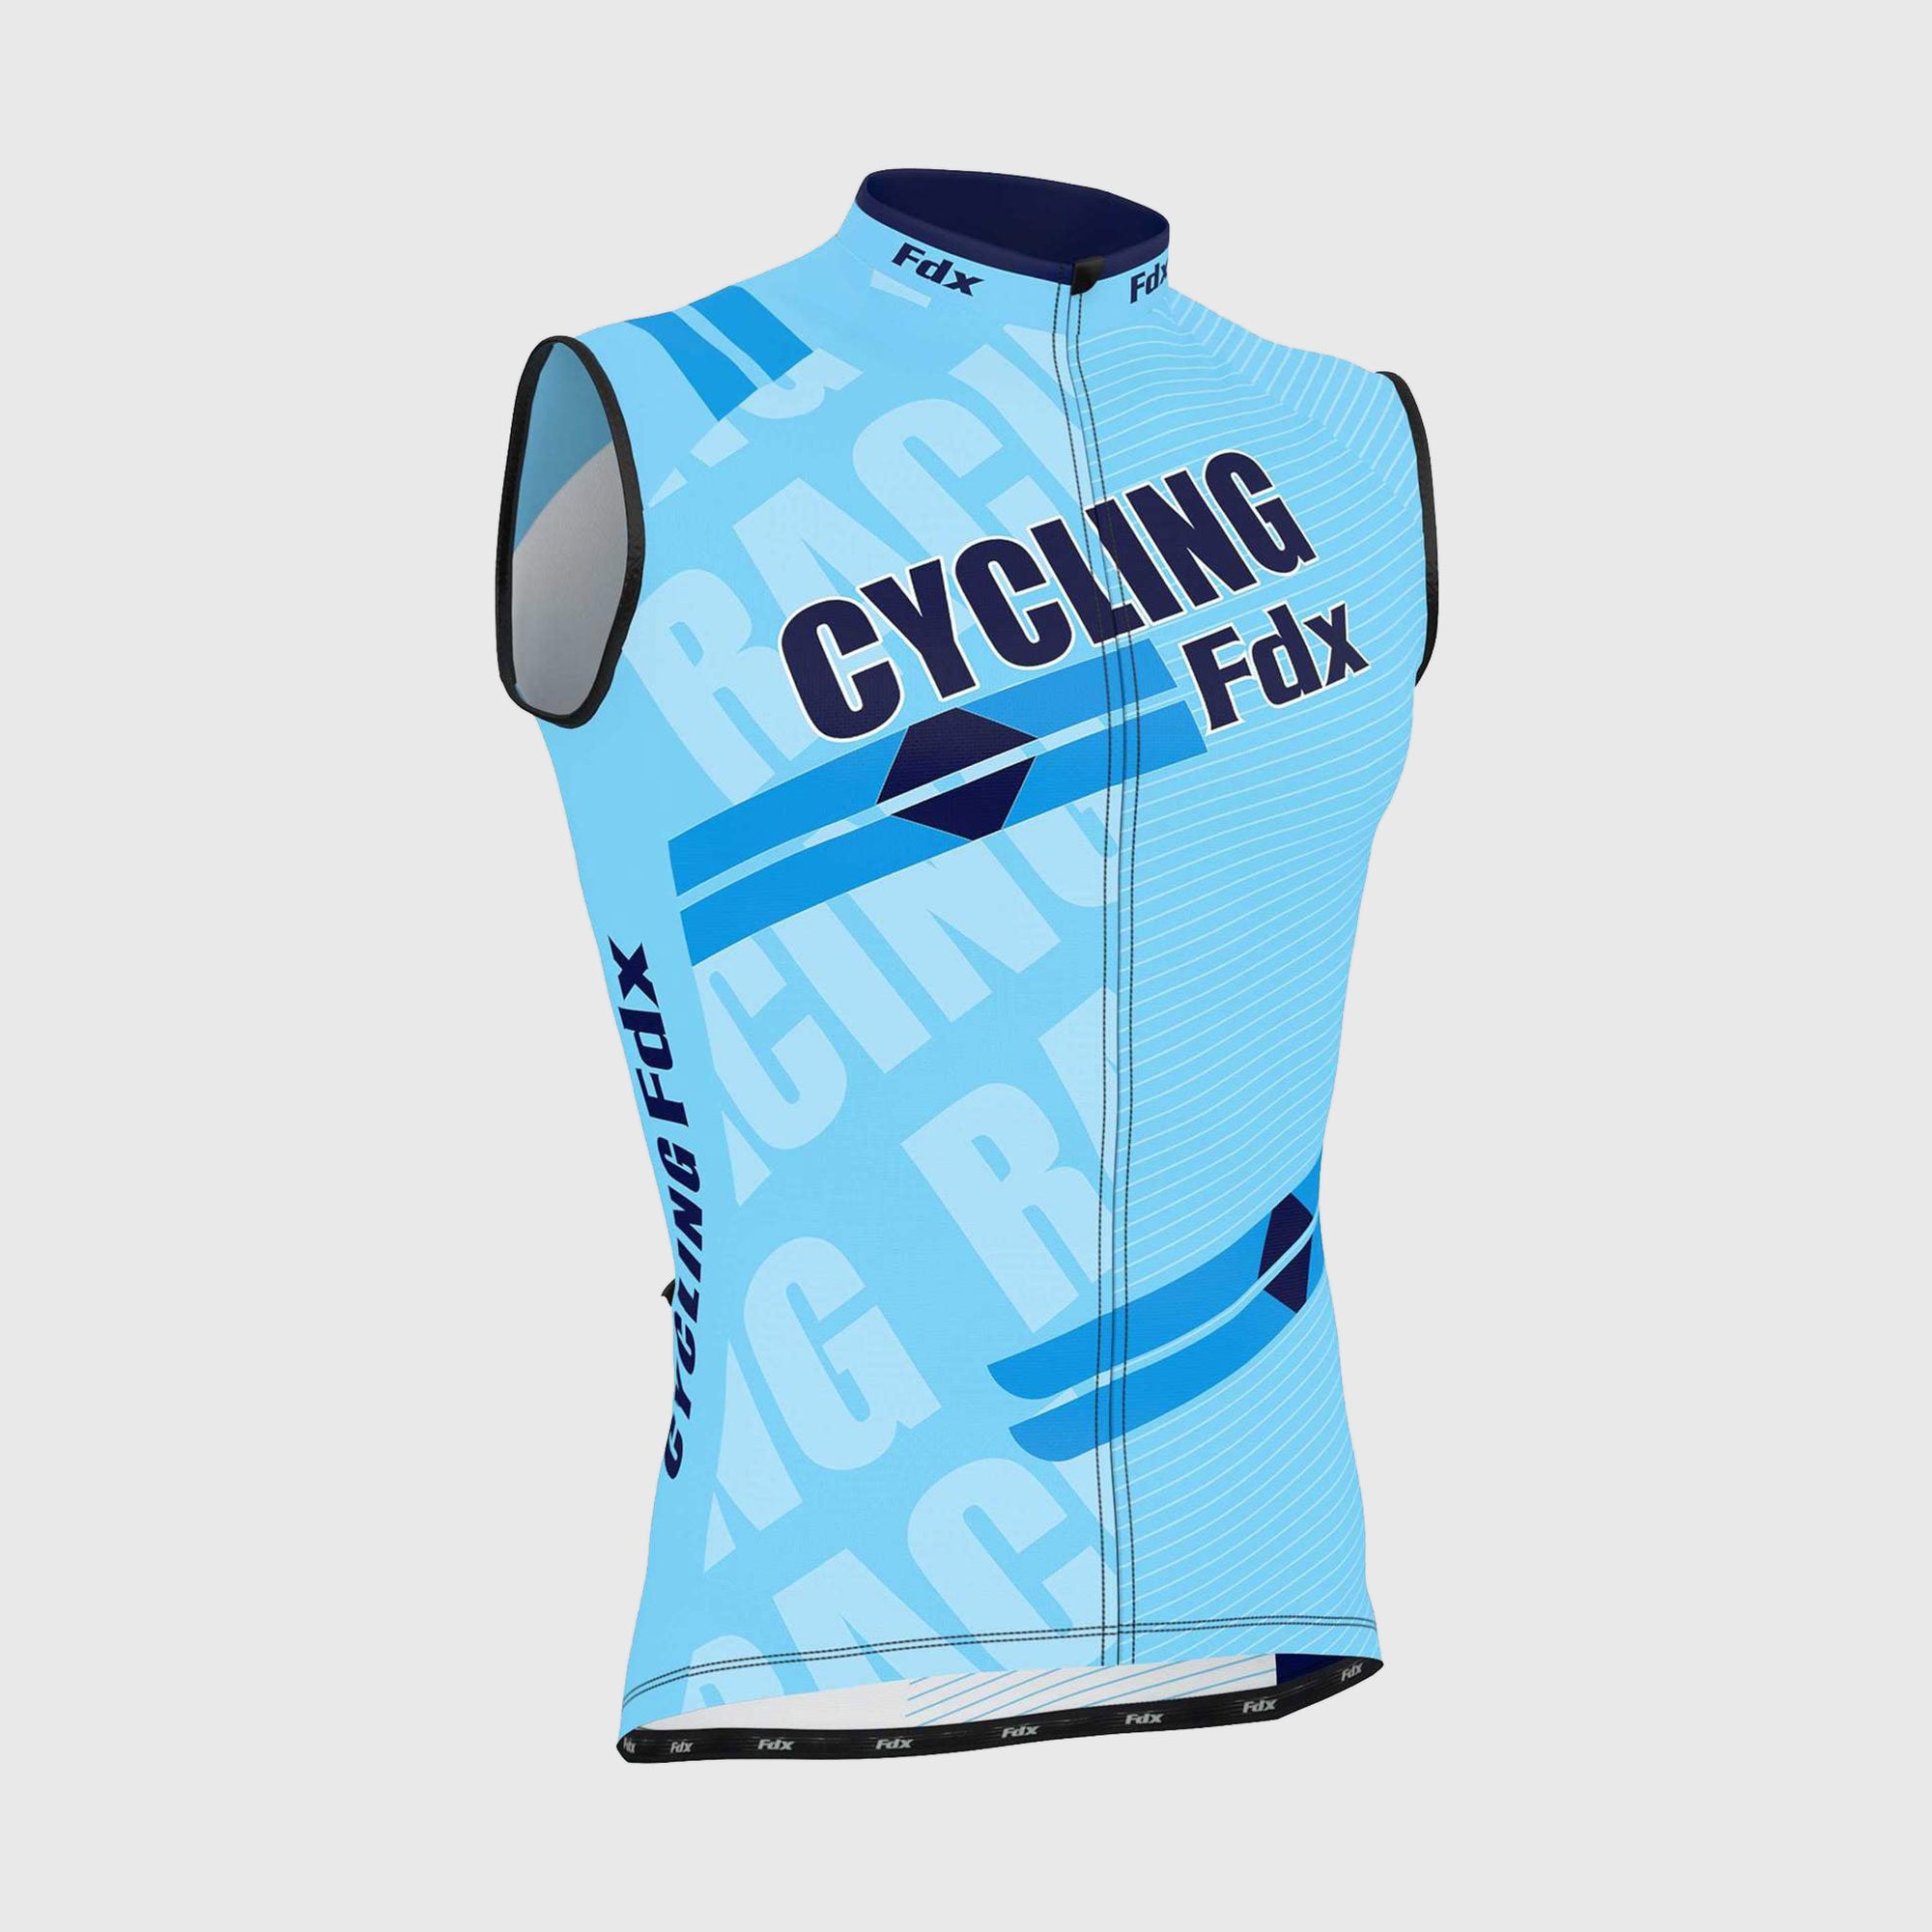 Fdx Mens Sky Blue Sleeveless Cycling Jersey for Summer Best Road Bike Wear Top Light Weight, Full Zipper, Pockets & Hi-viz Reflectors - Core